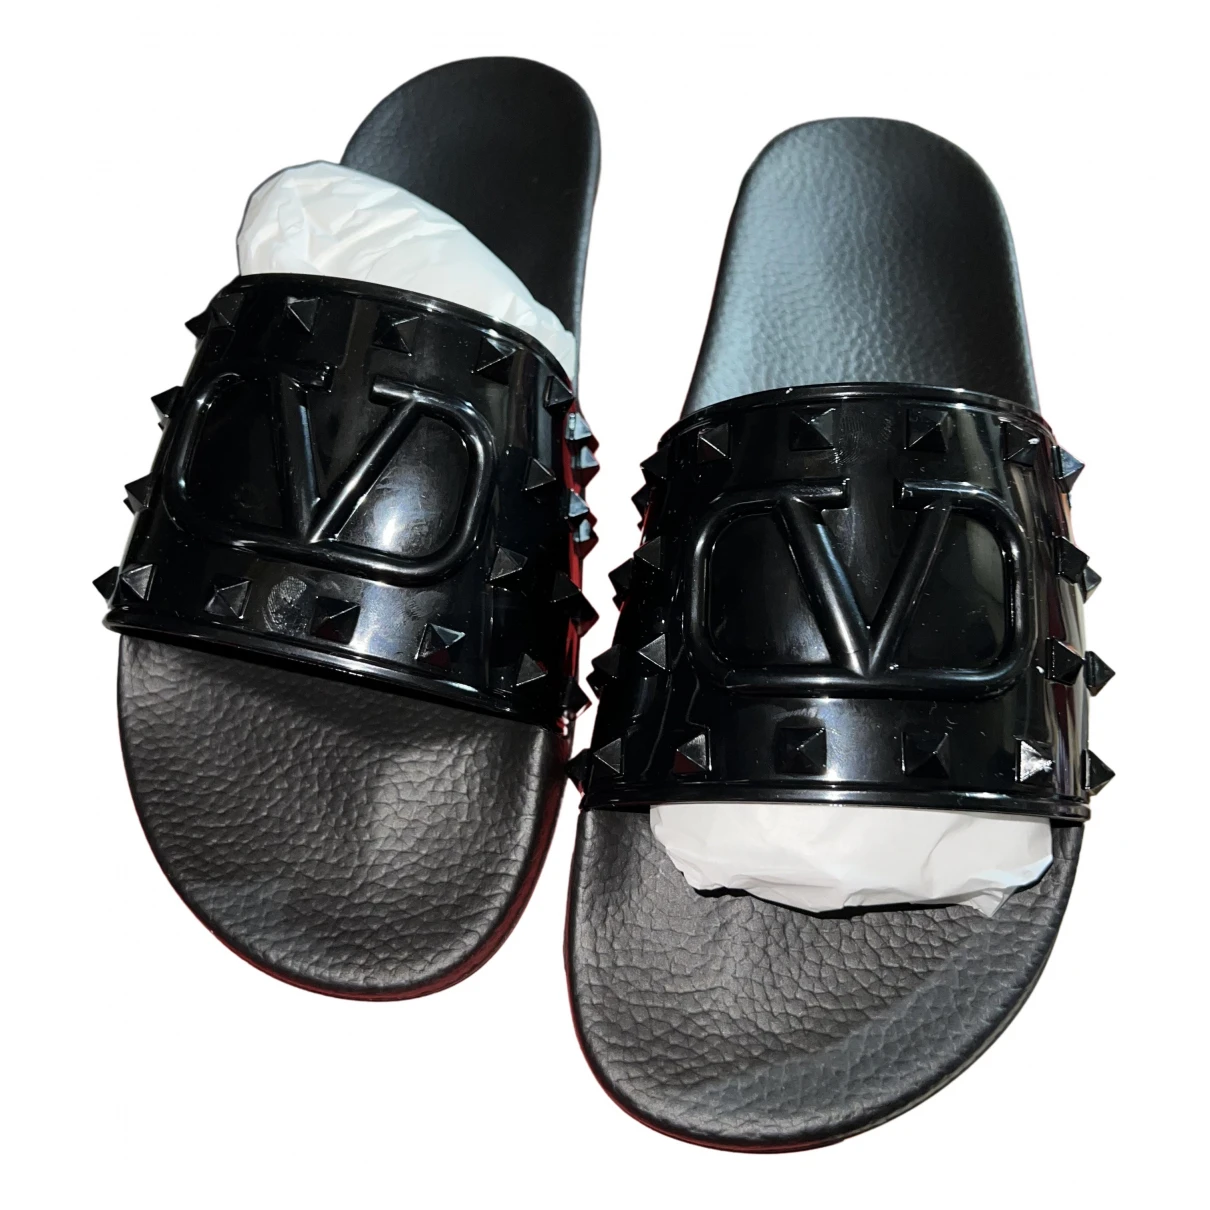 shoes Valentino Garavani sandals for Male Plastic 40 EU. Used condition